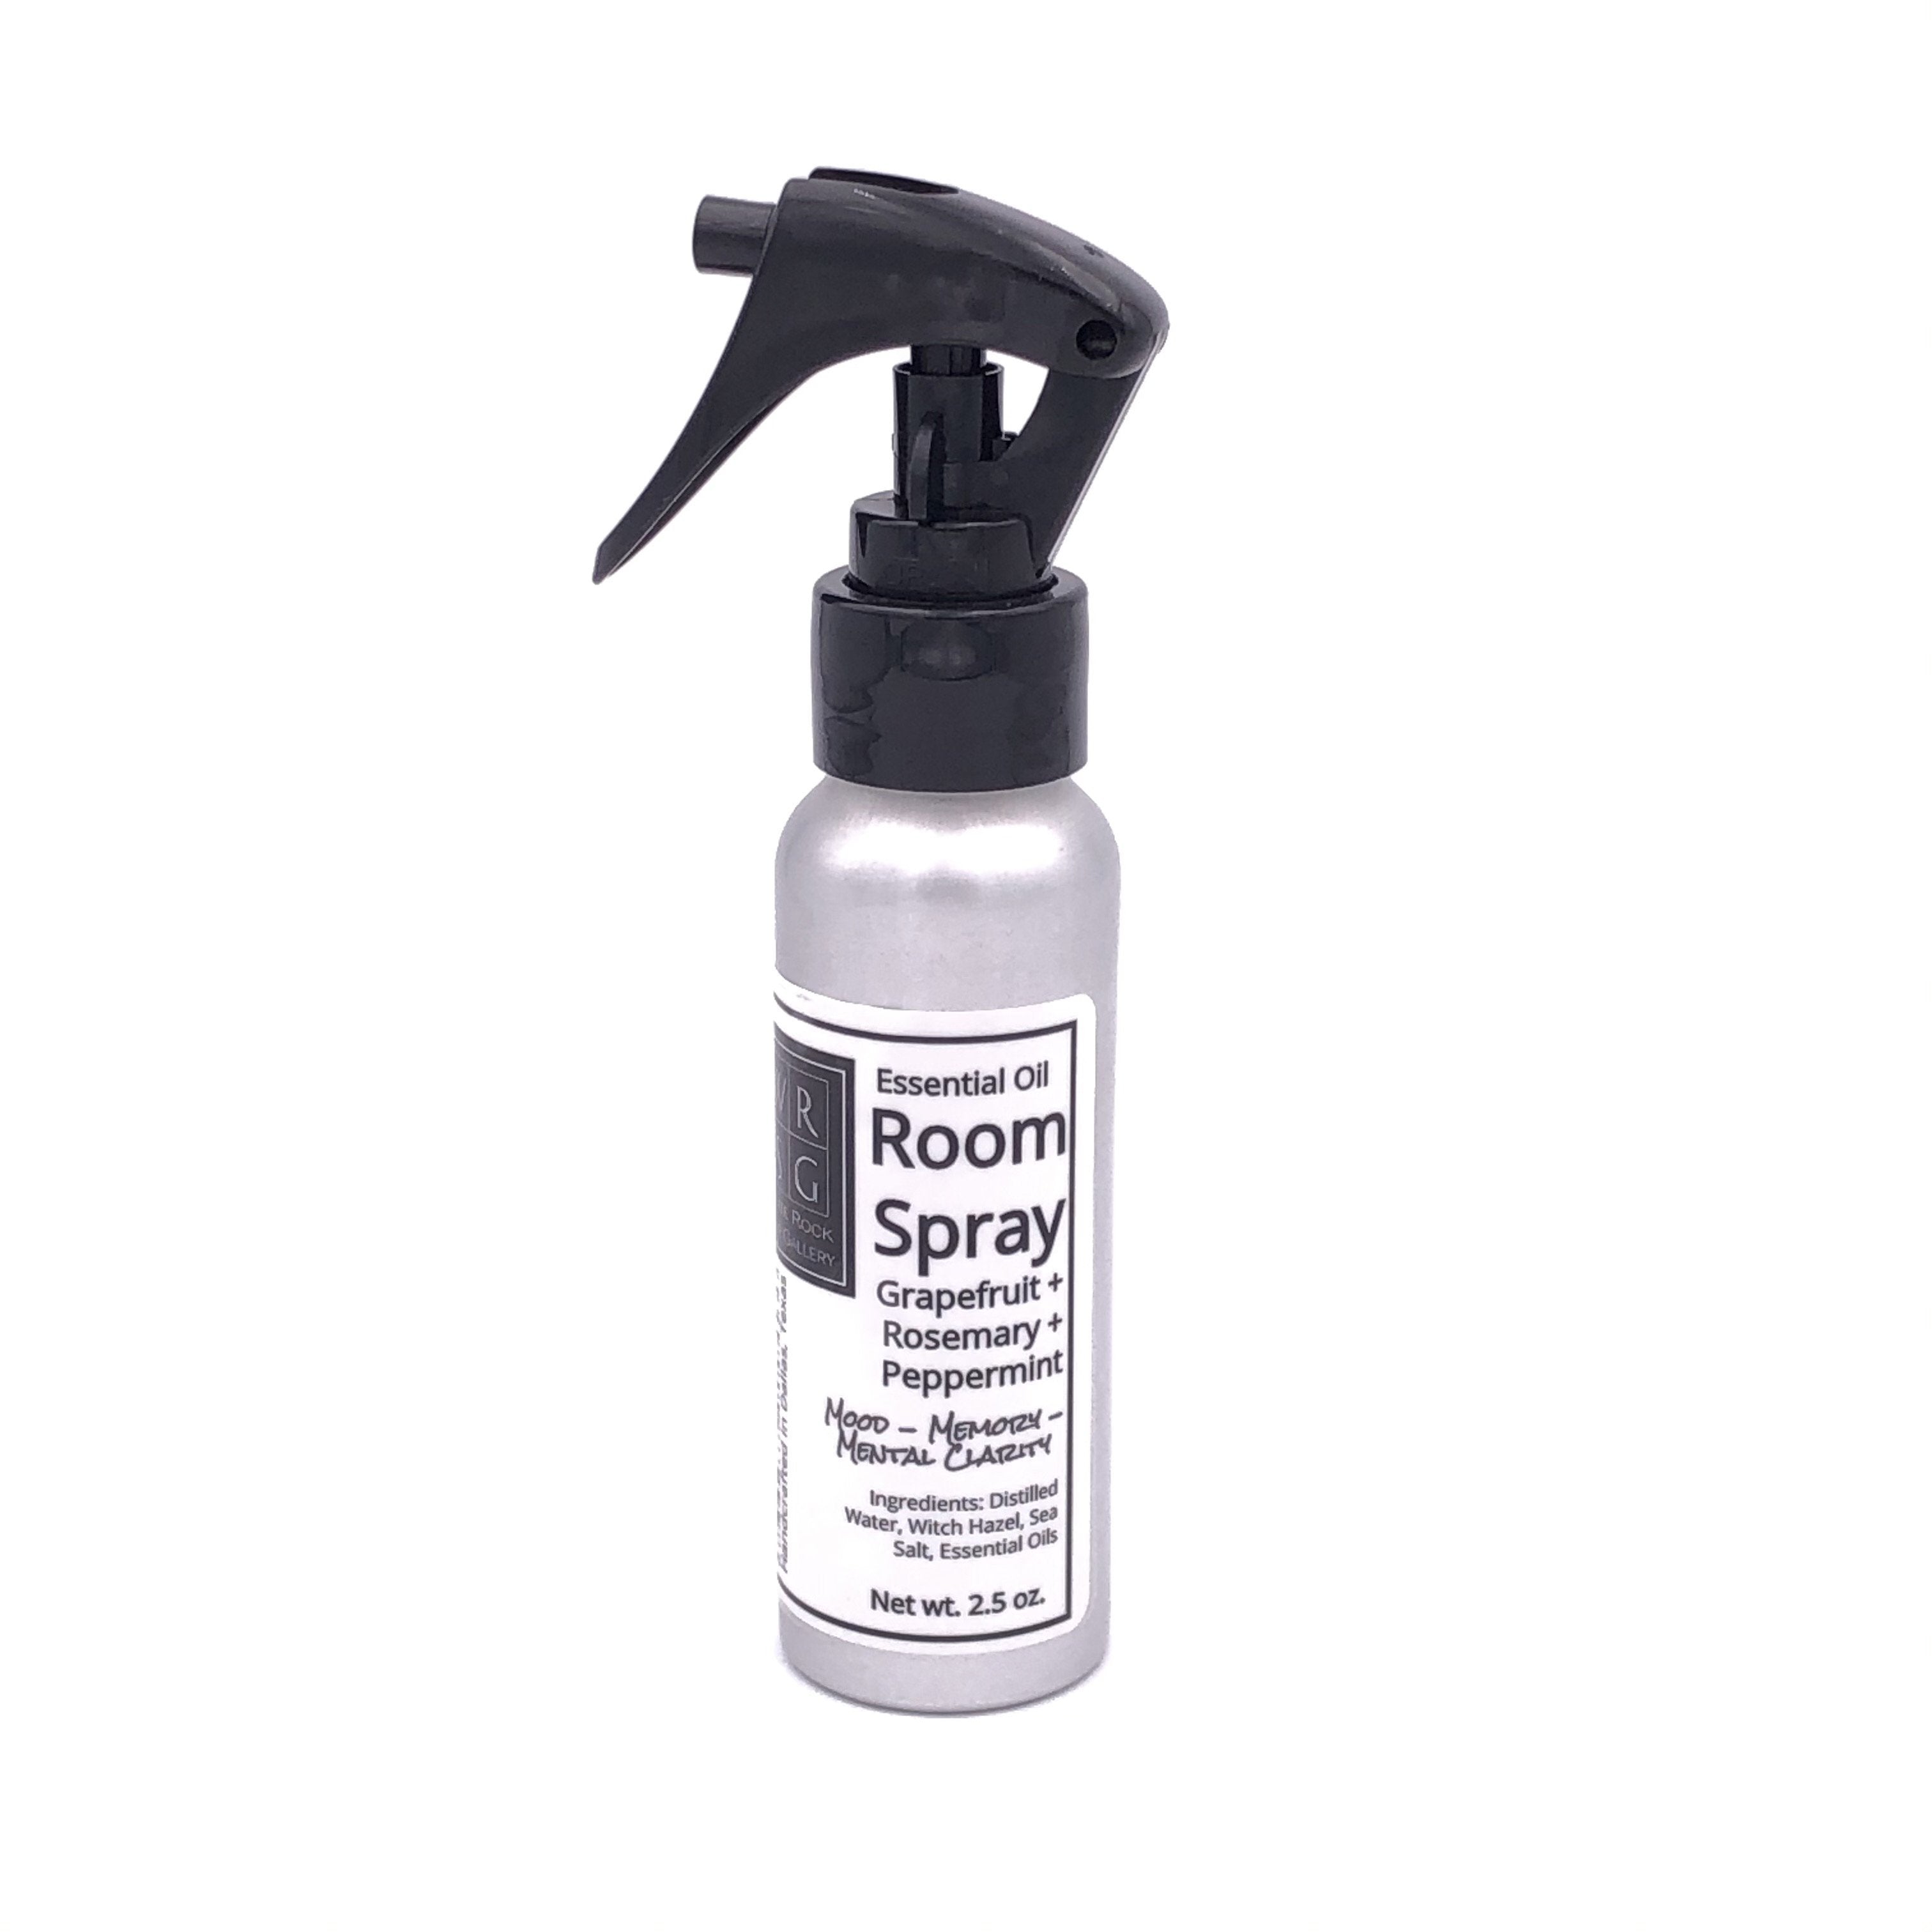 Spray de aceite esencial para habitaciones